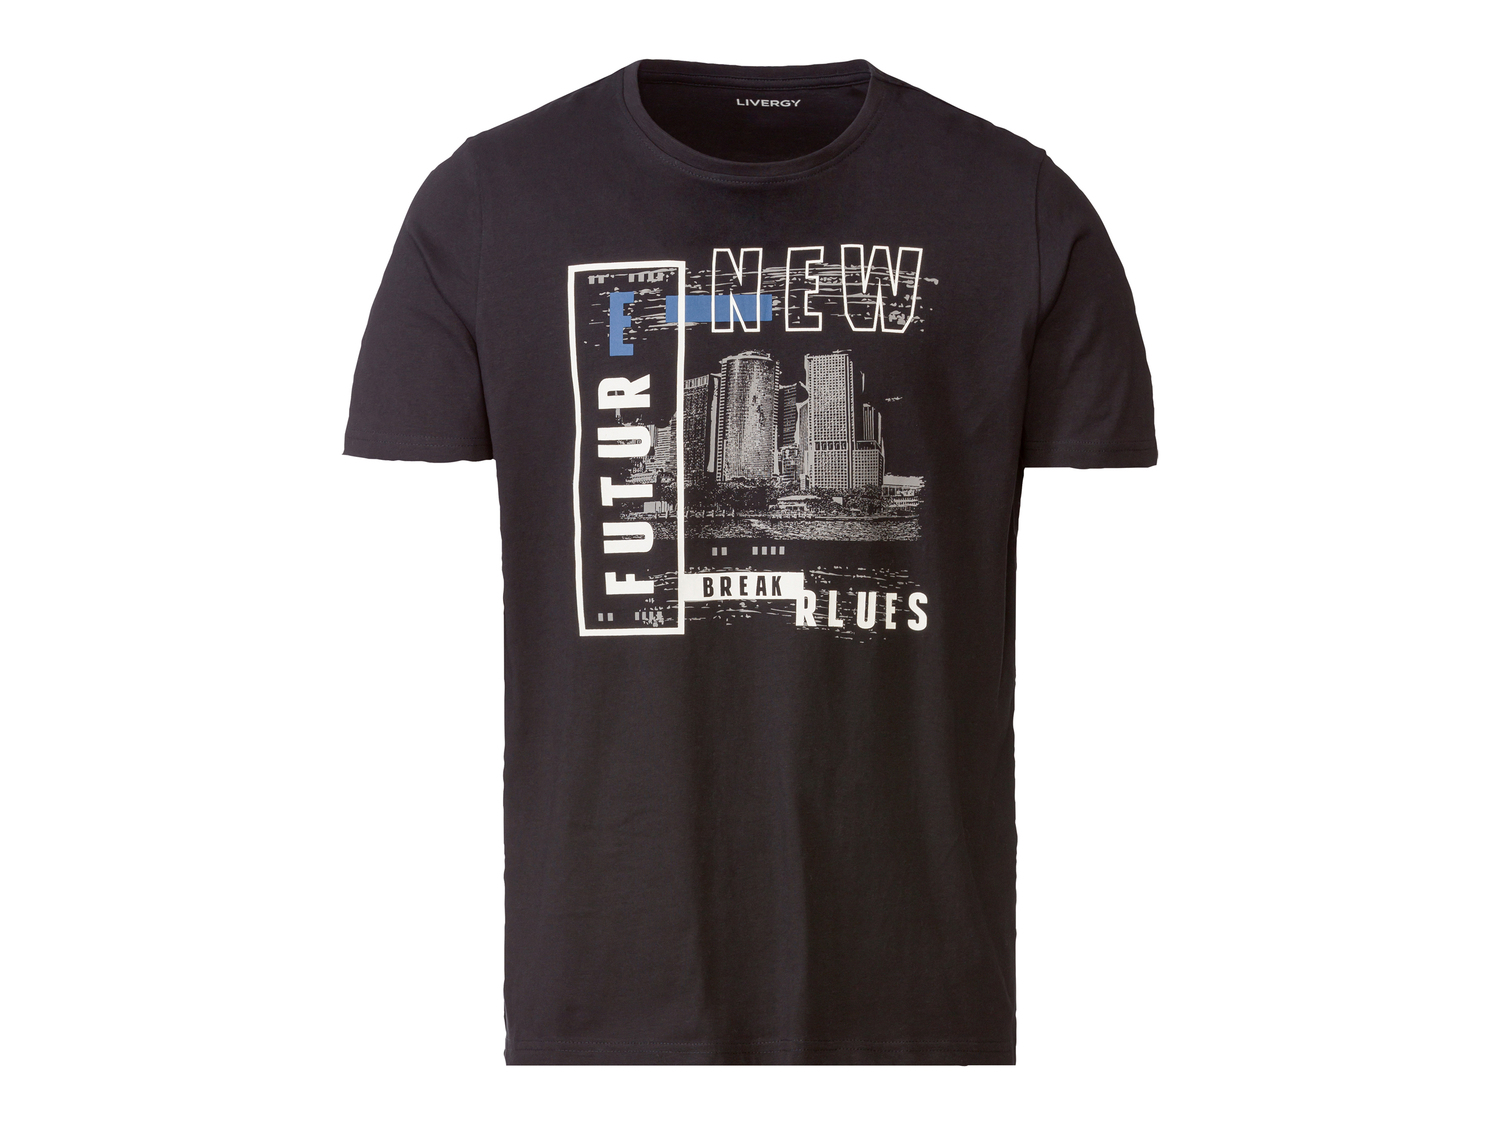 T-shirt da uomo Livergy, prezzo 6.99 &#8364; 
Misure: M-XXL
Taglie disponibili

Caratteristiche

- ...